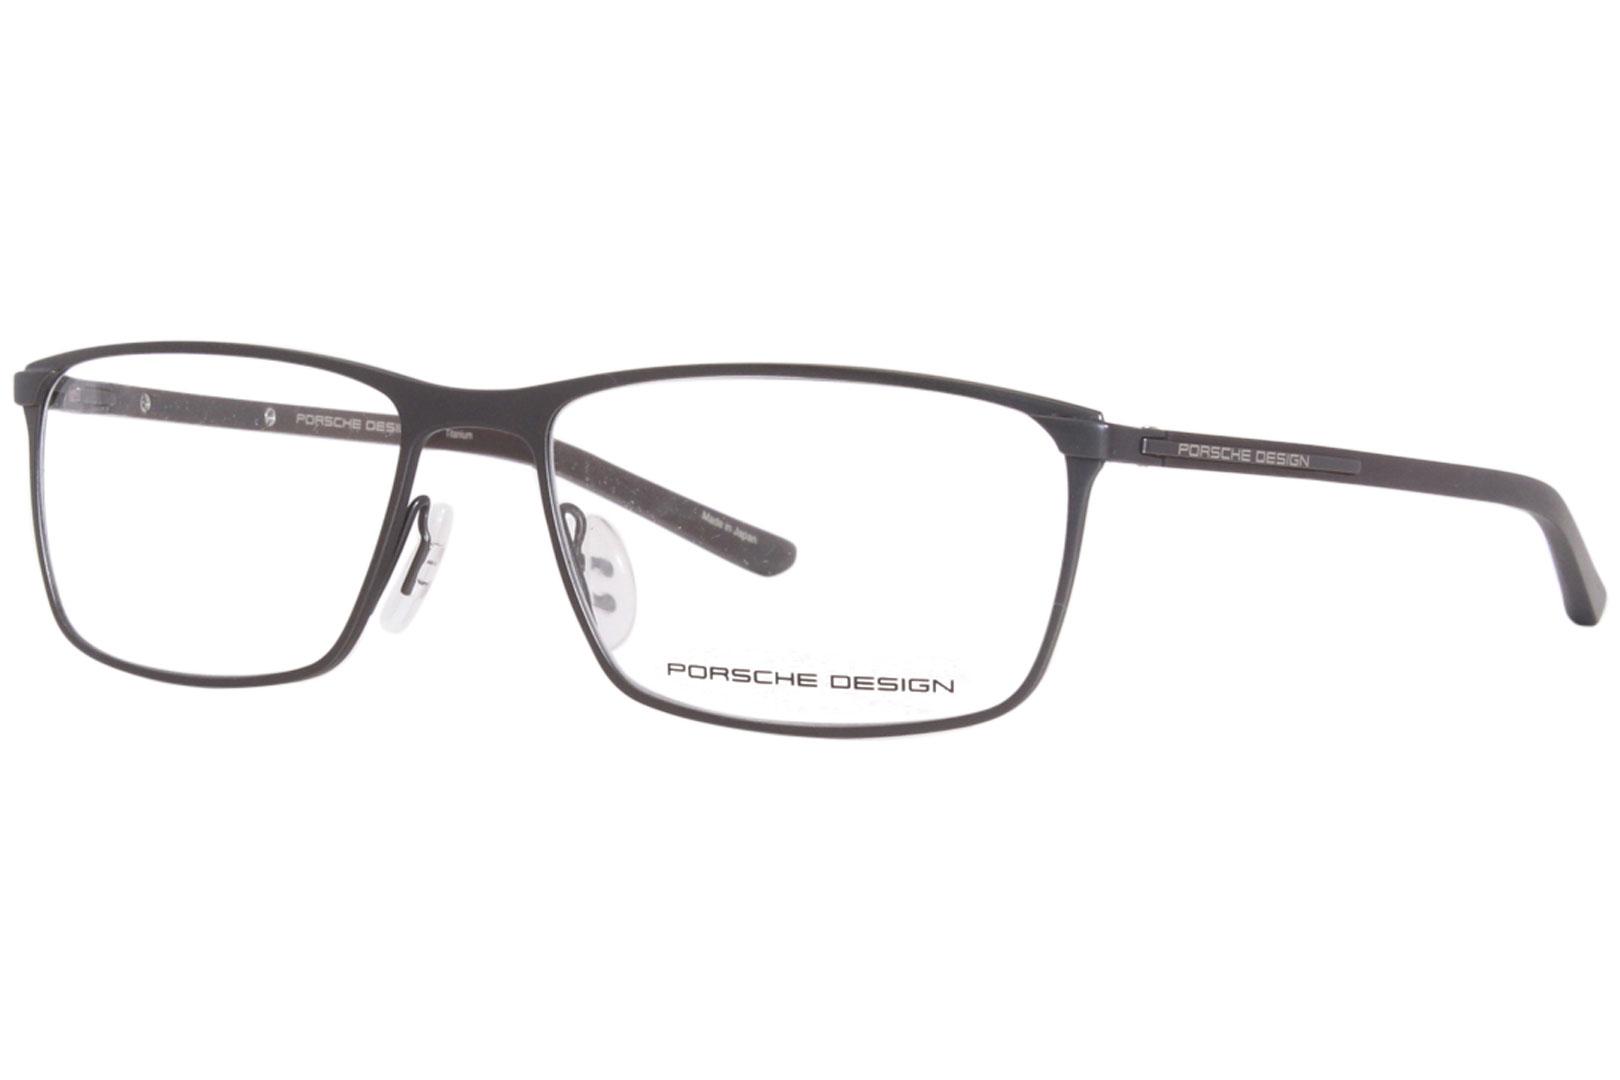 Porsche Design Men's Eyeglasses P8287 P/8287 Titanium Full Rim Optical ...